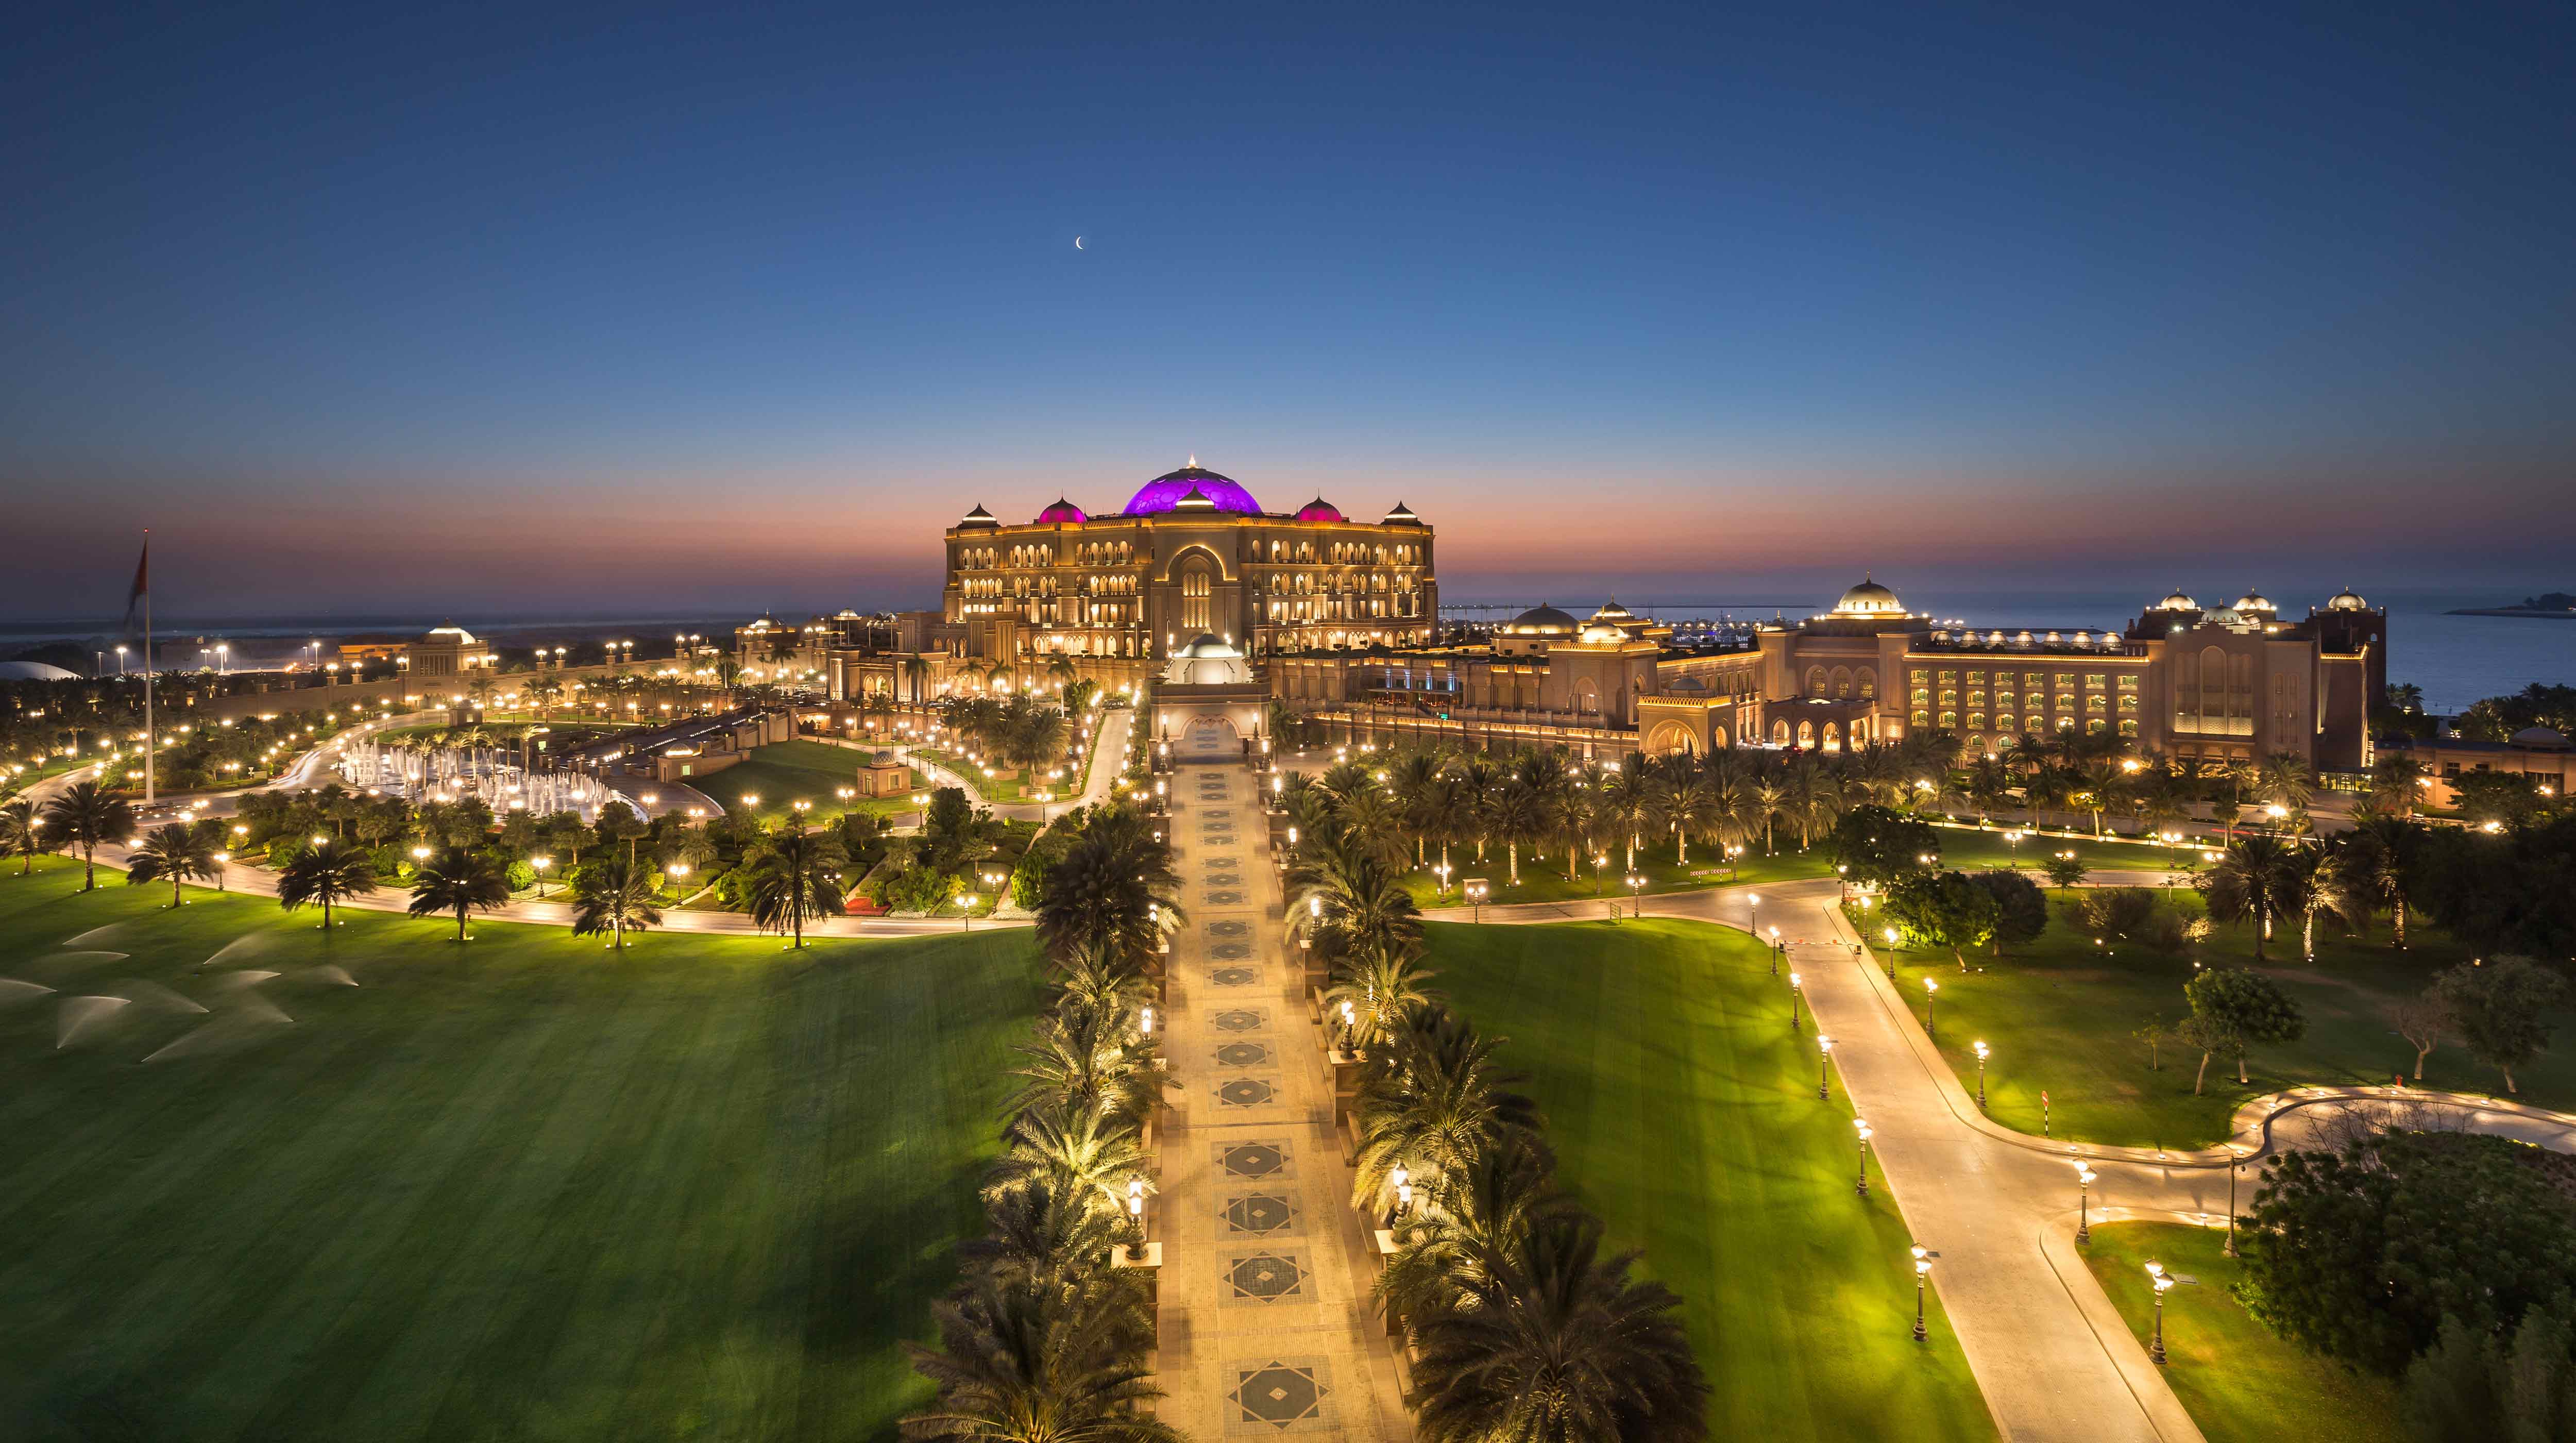 لقطة من الأعلى لقصر الإمارات وهو مضاء ليلاً